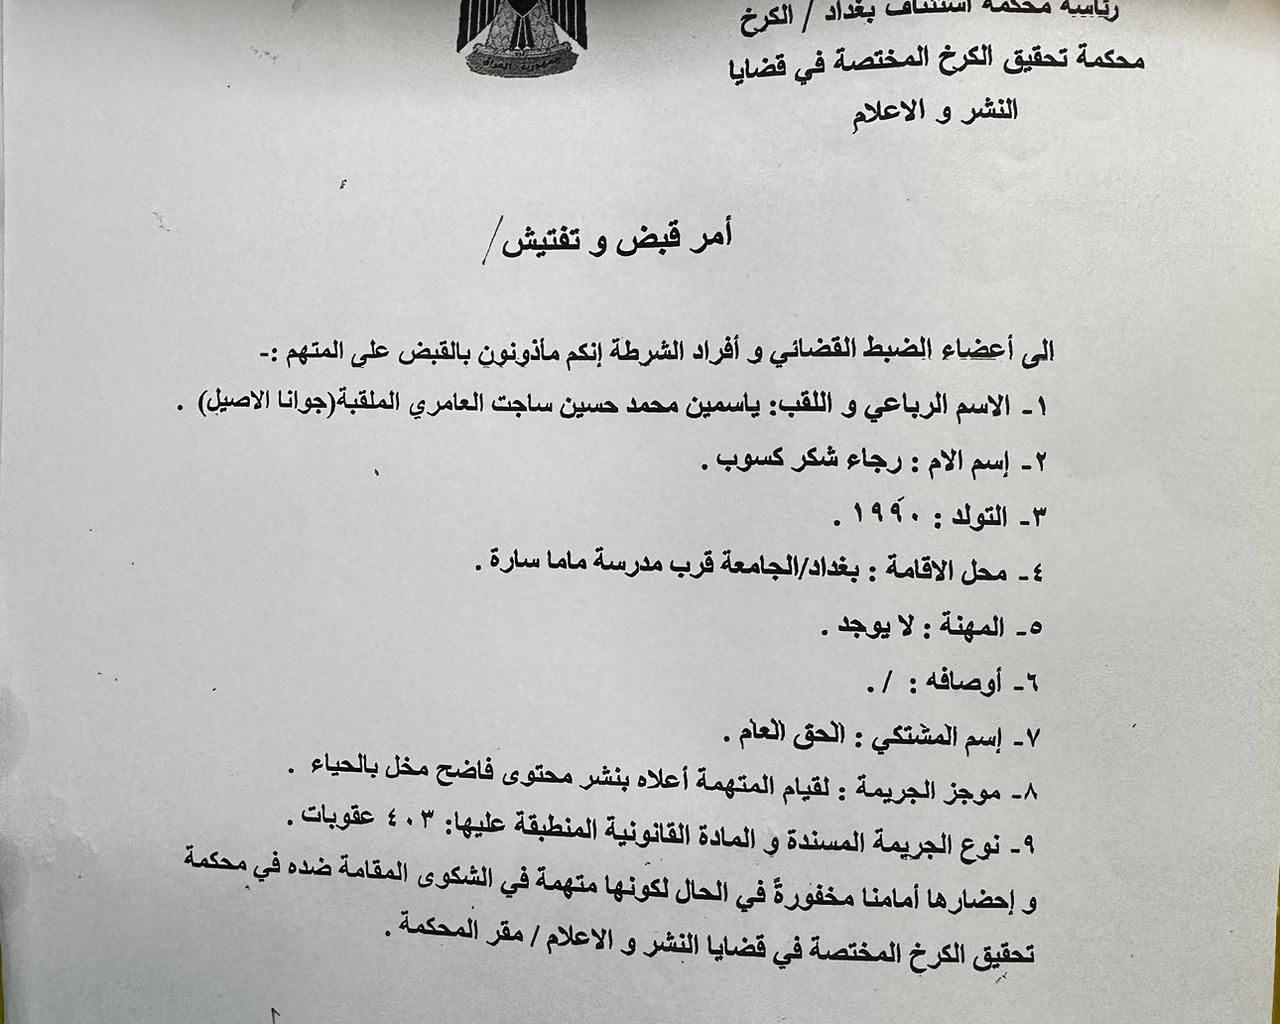 صدور مذكرة قبض وتفتيش بحق الفنانة العراقية "جوانا الاصيل" بتهمة المحتوى الهابط